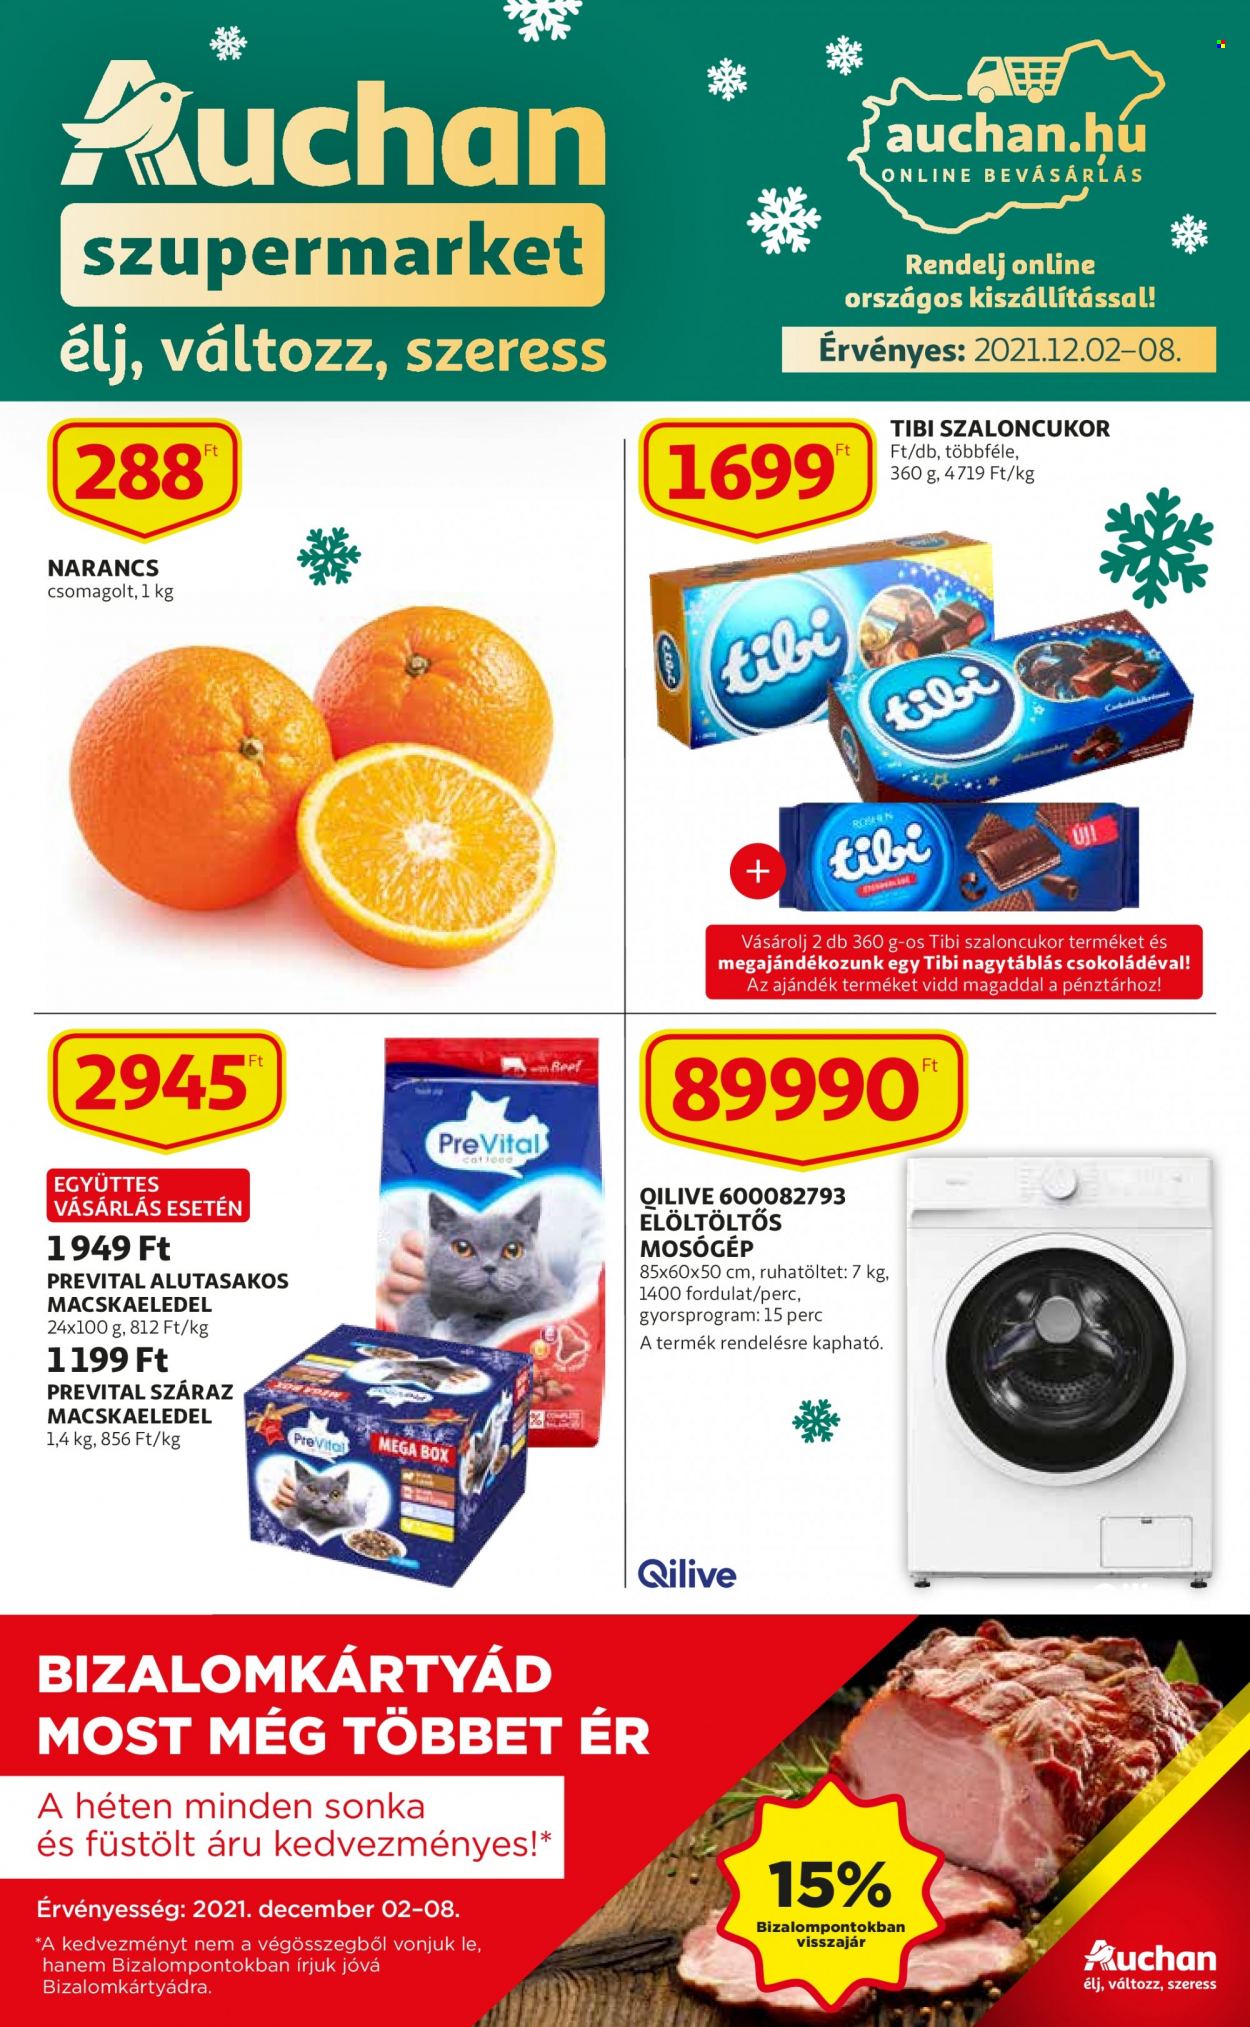 thumbnail - Auchan akciós újsága  - 2021.12.02 - 2021.12.08 - Akciós termékek - narancs, sonka, macskaeledel, PreVital, elöltöltős mosógép, mosógép.  1. Oldal